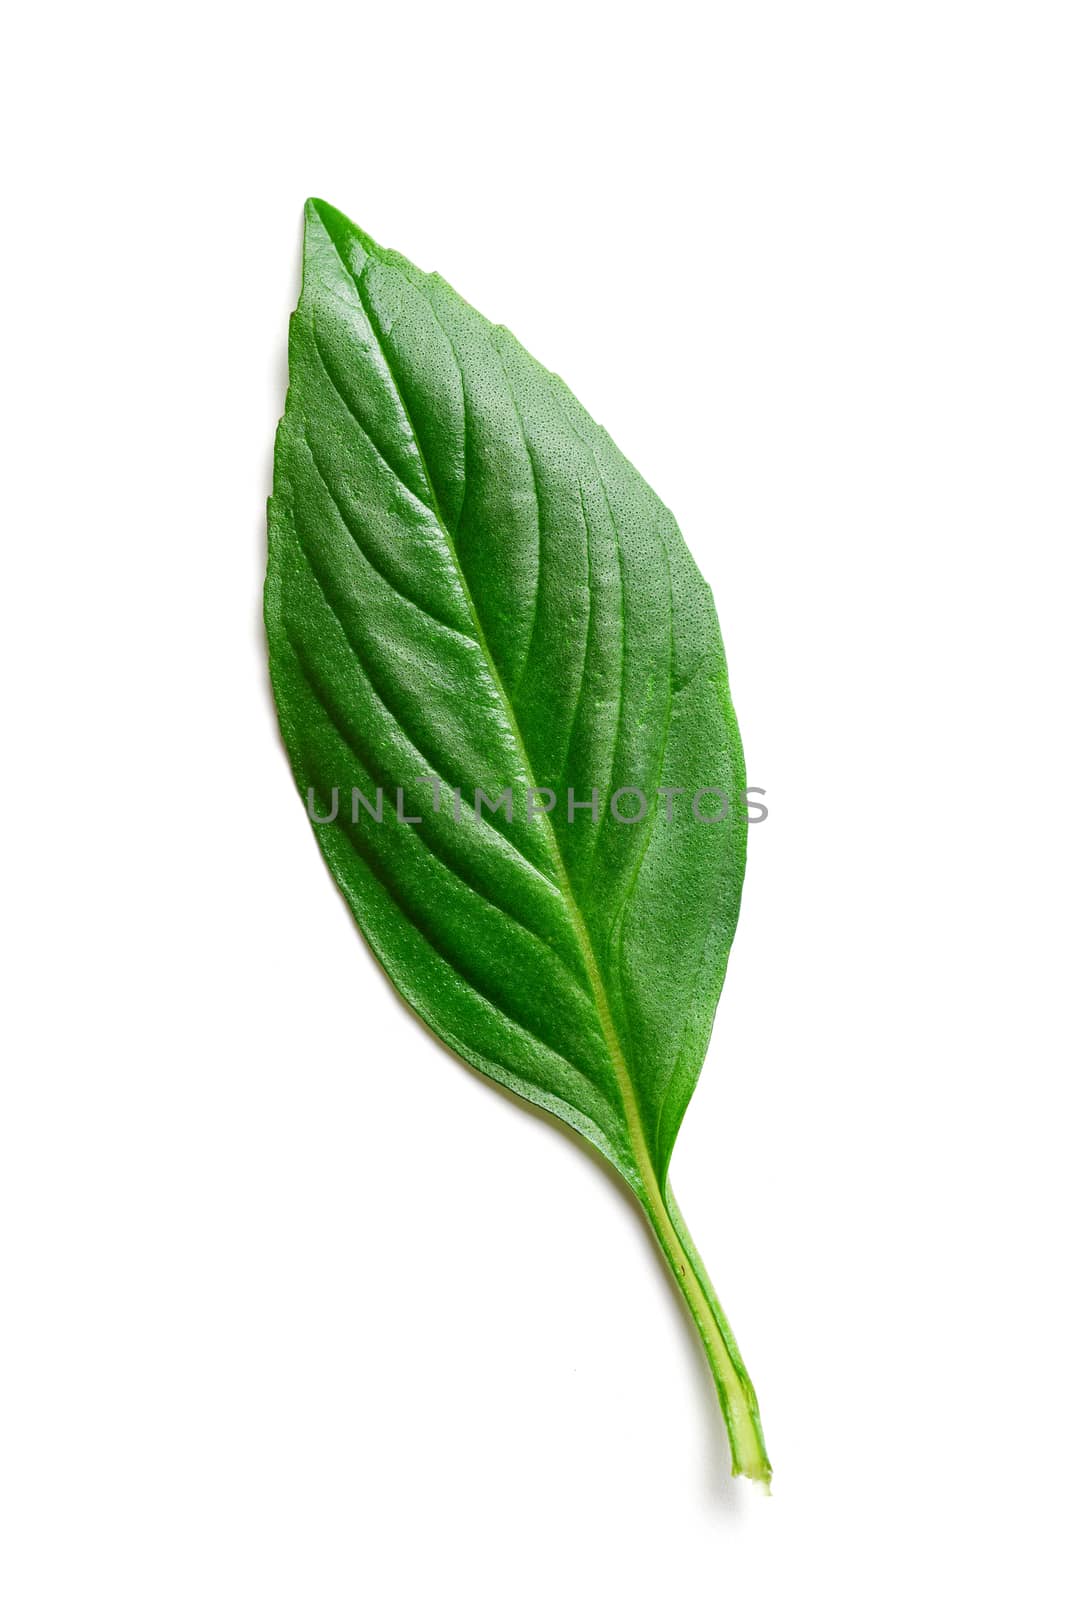 basil leaf isolated on white